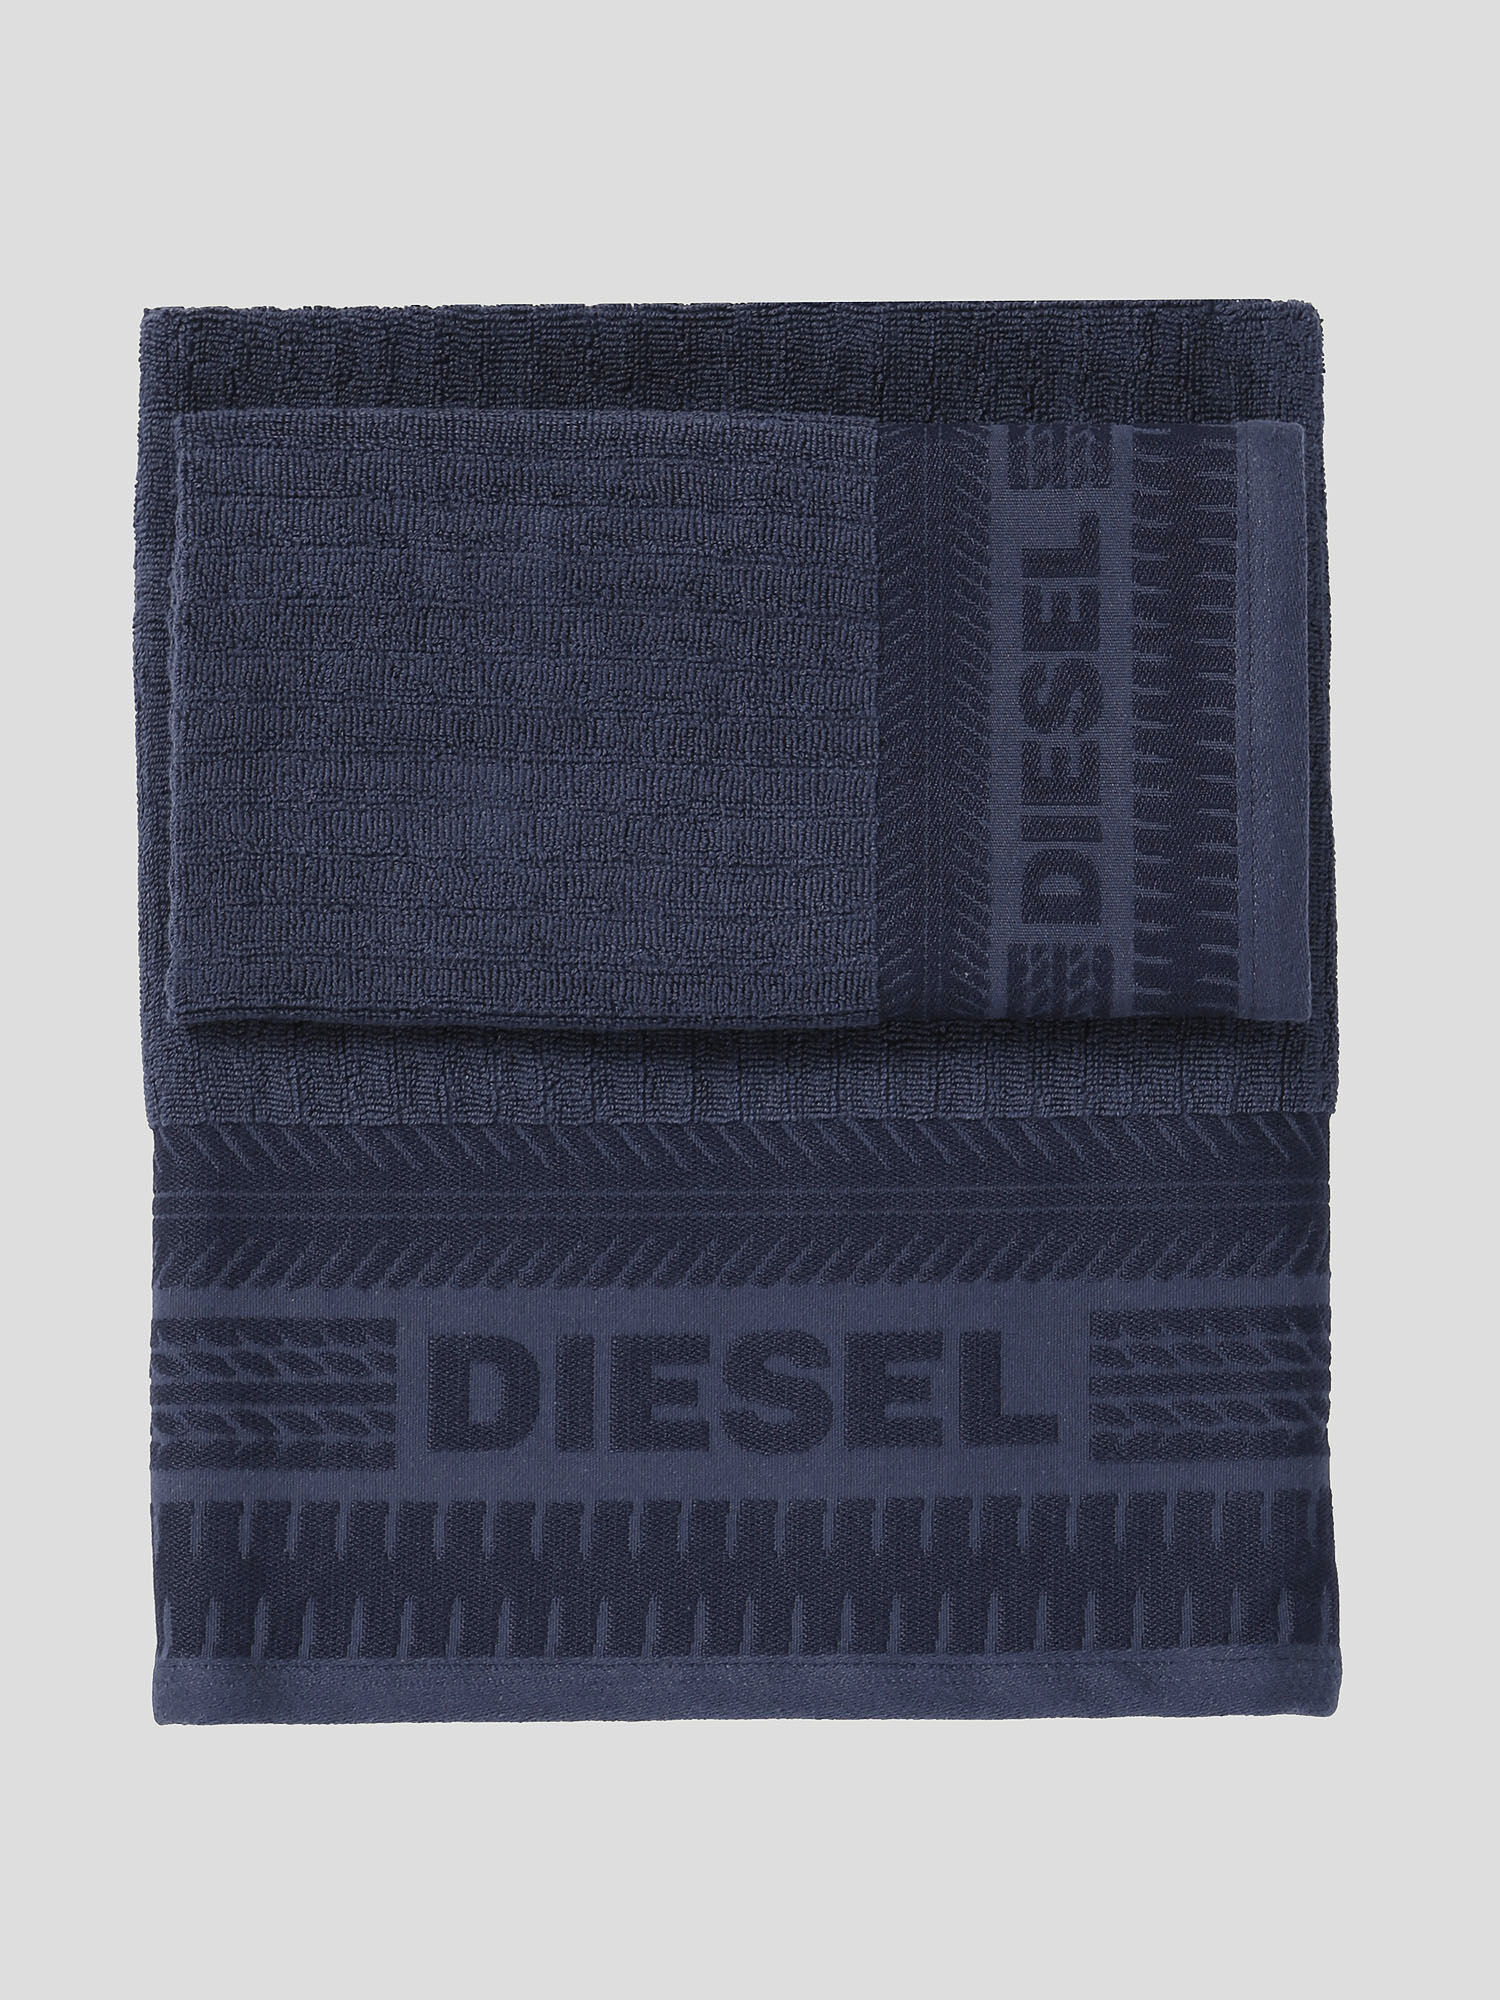 Diesel - 72327 SOLID, Azul - Image 1